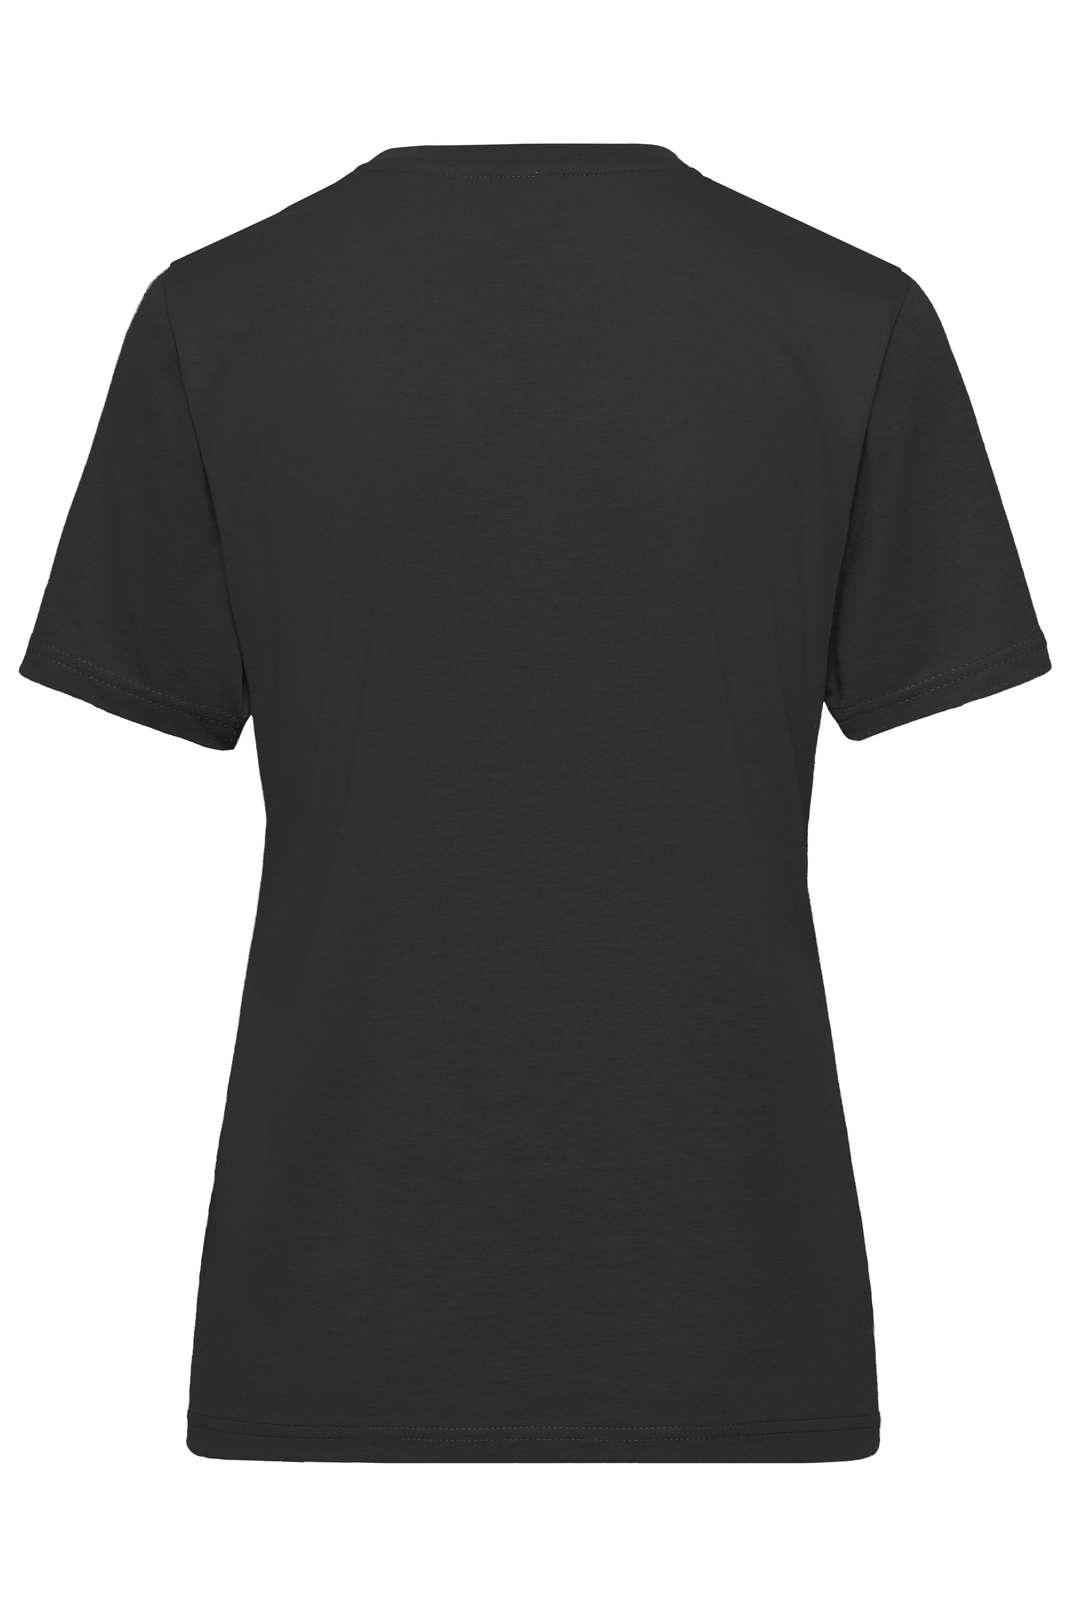 JN BIO T-SHIRT DAME - Arbejds T-shirt - JA Profil 